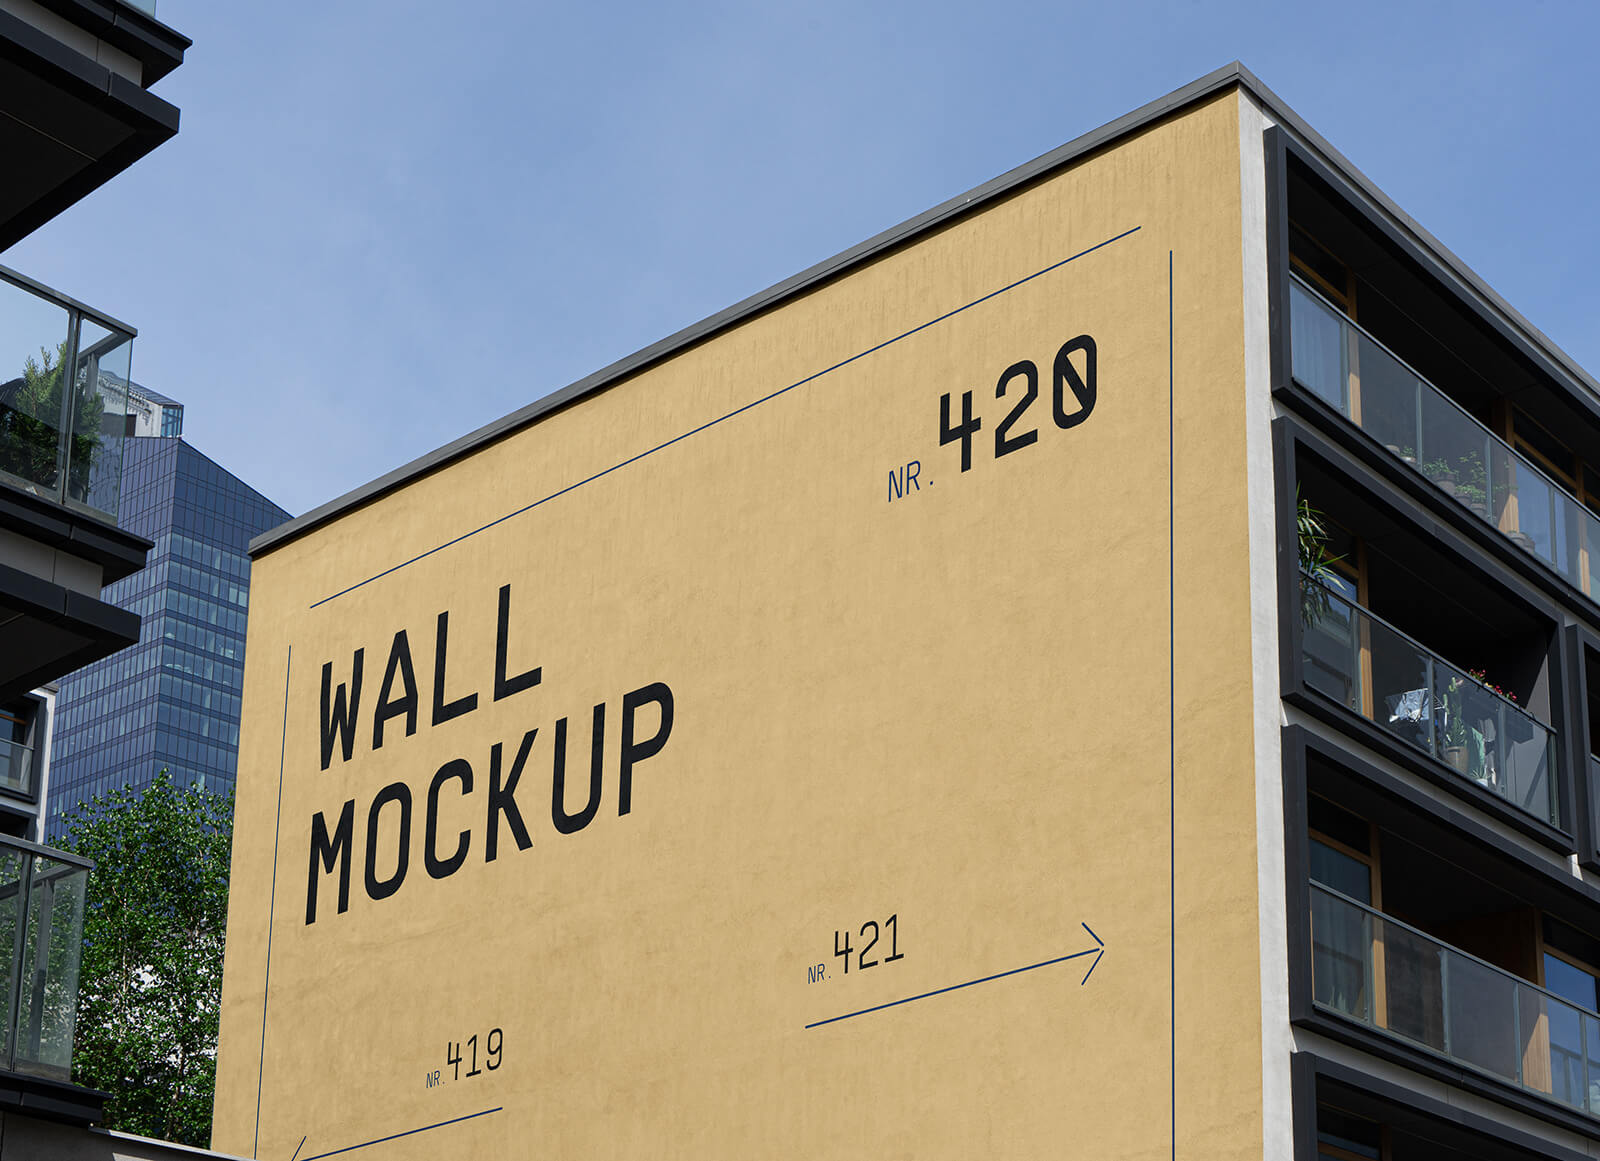 Free Building Side Elevation Wallscape Mockup PSD